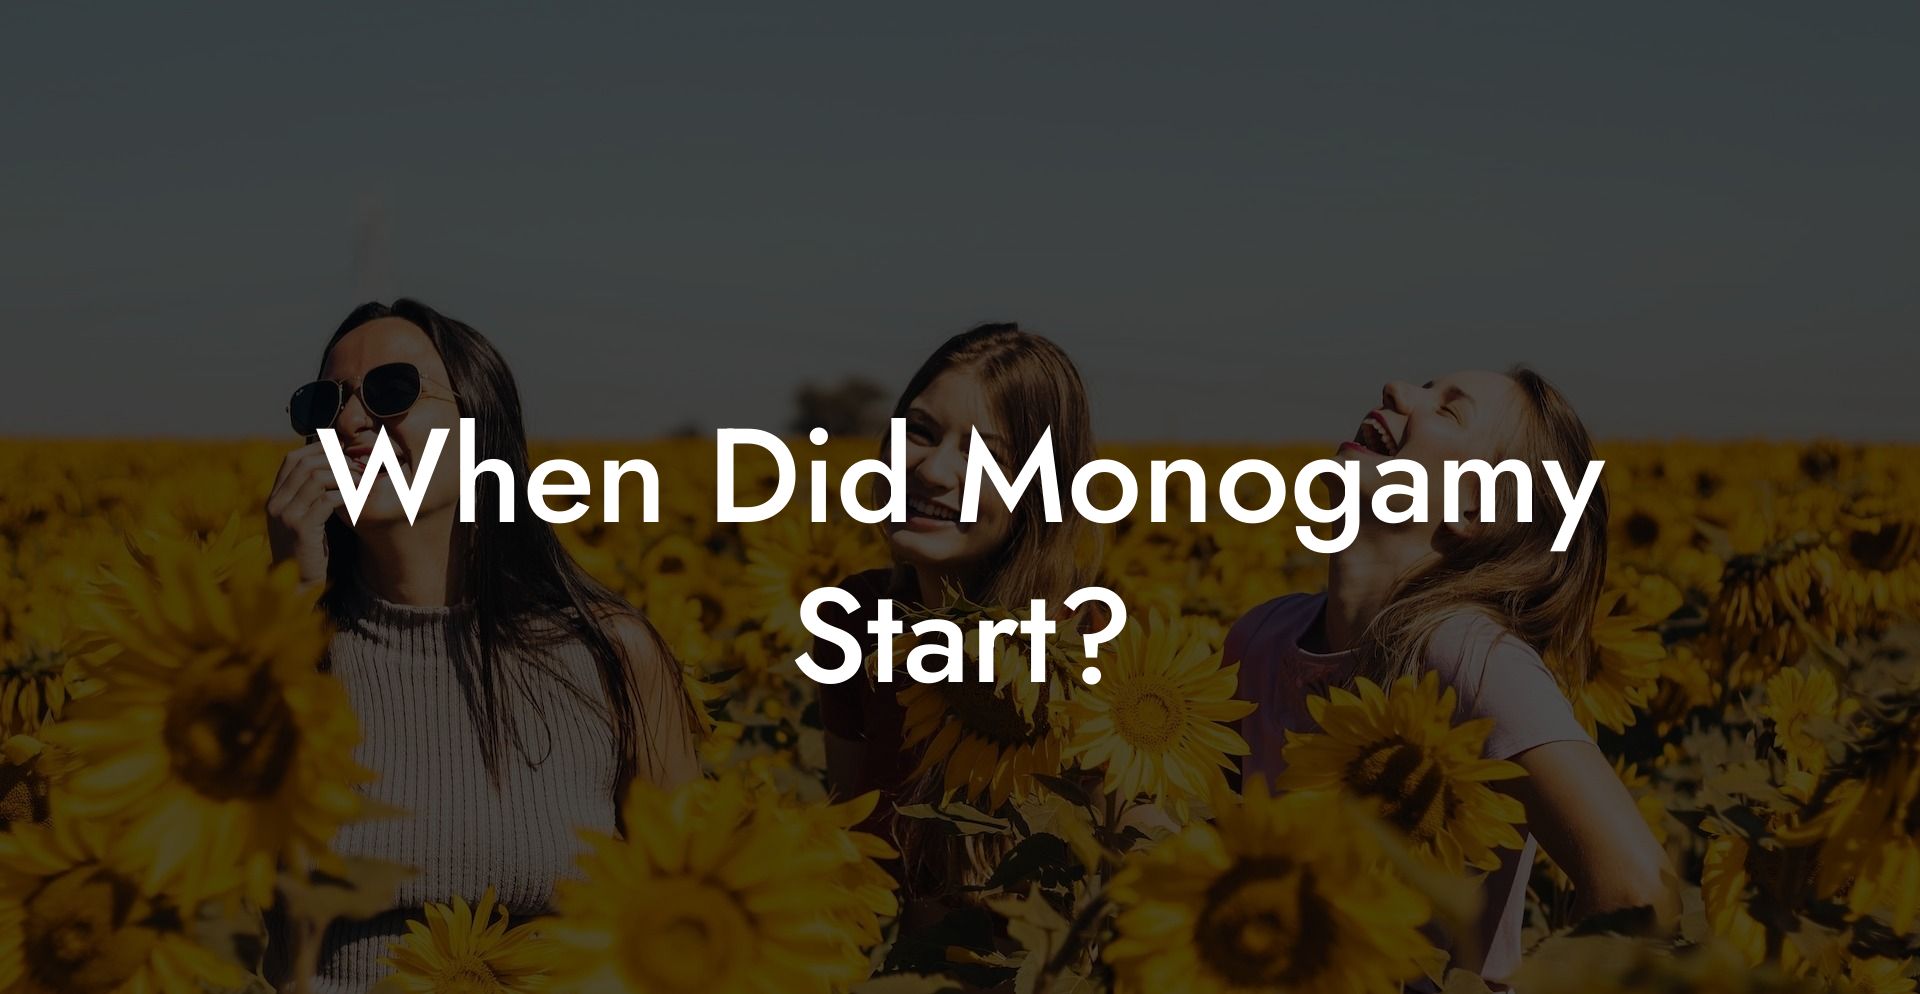 When Did Monogamy Start?